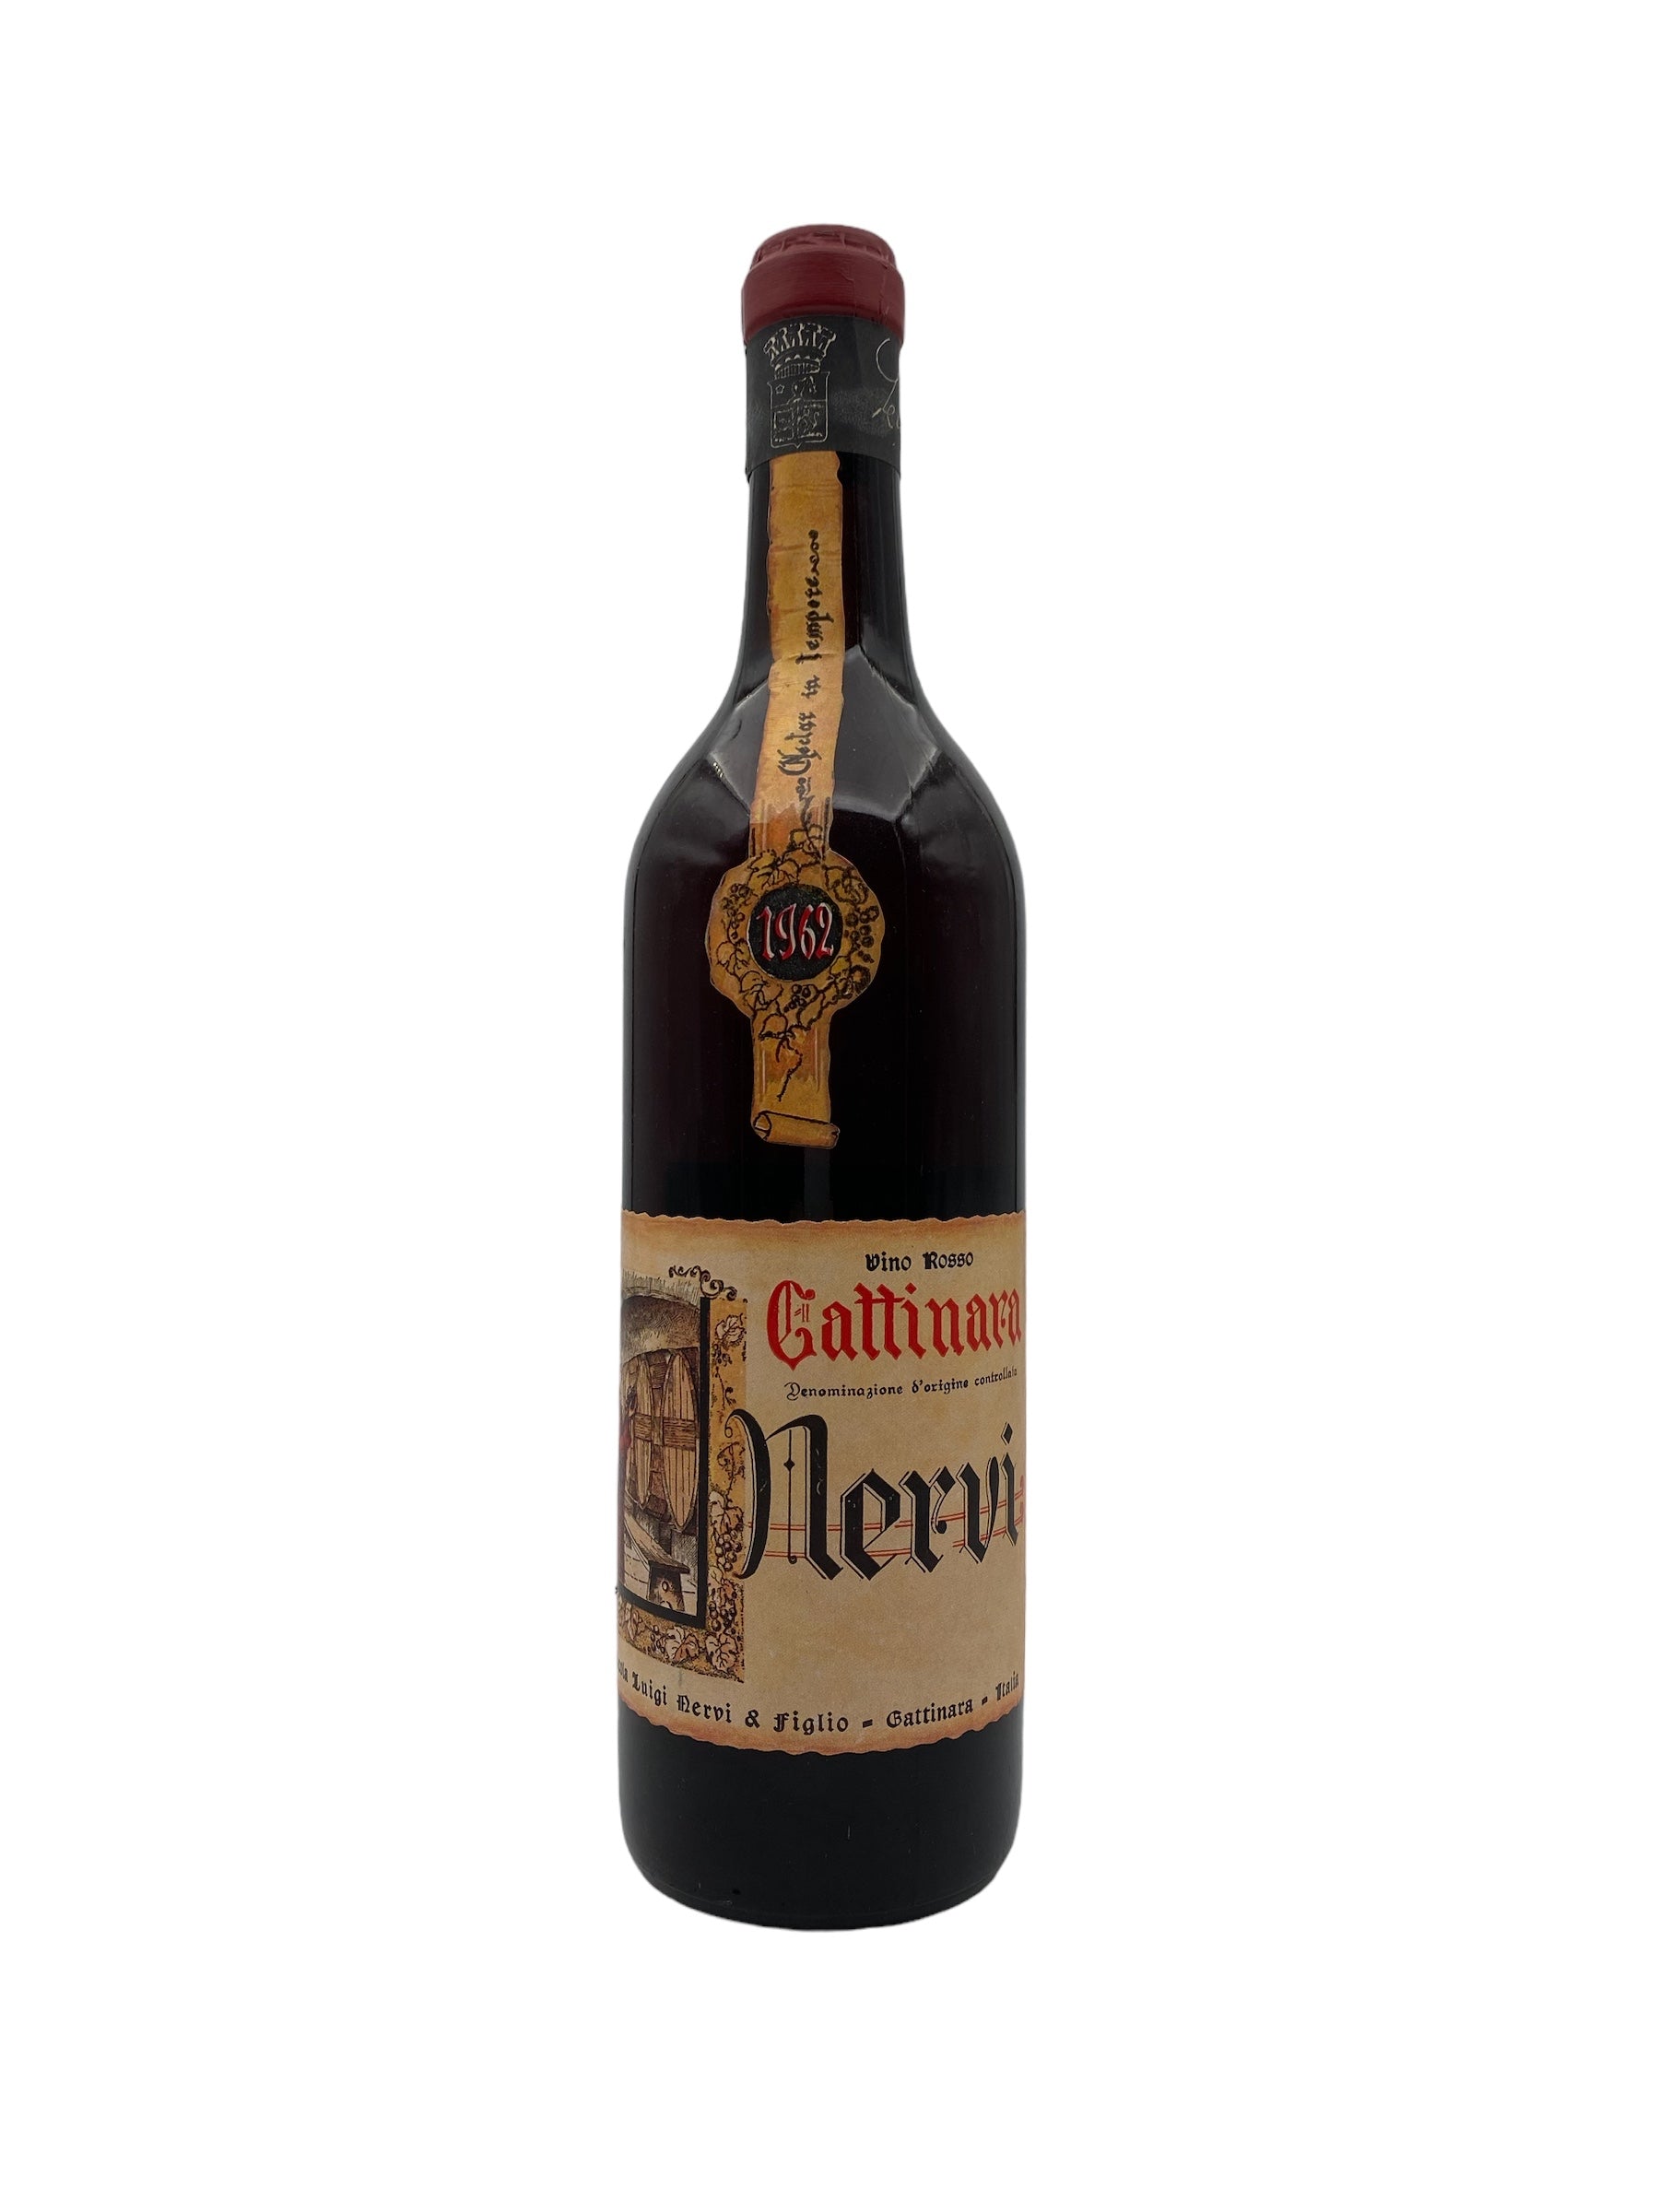 Se Gattinara 1962 Nervi hos Bottleswithhistory.dk